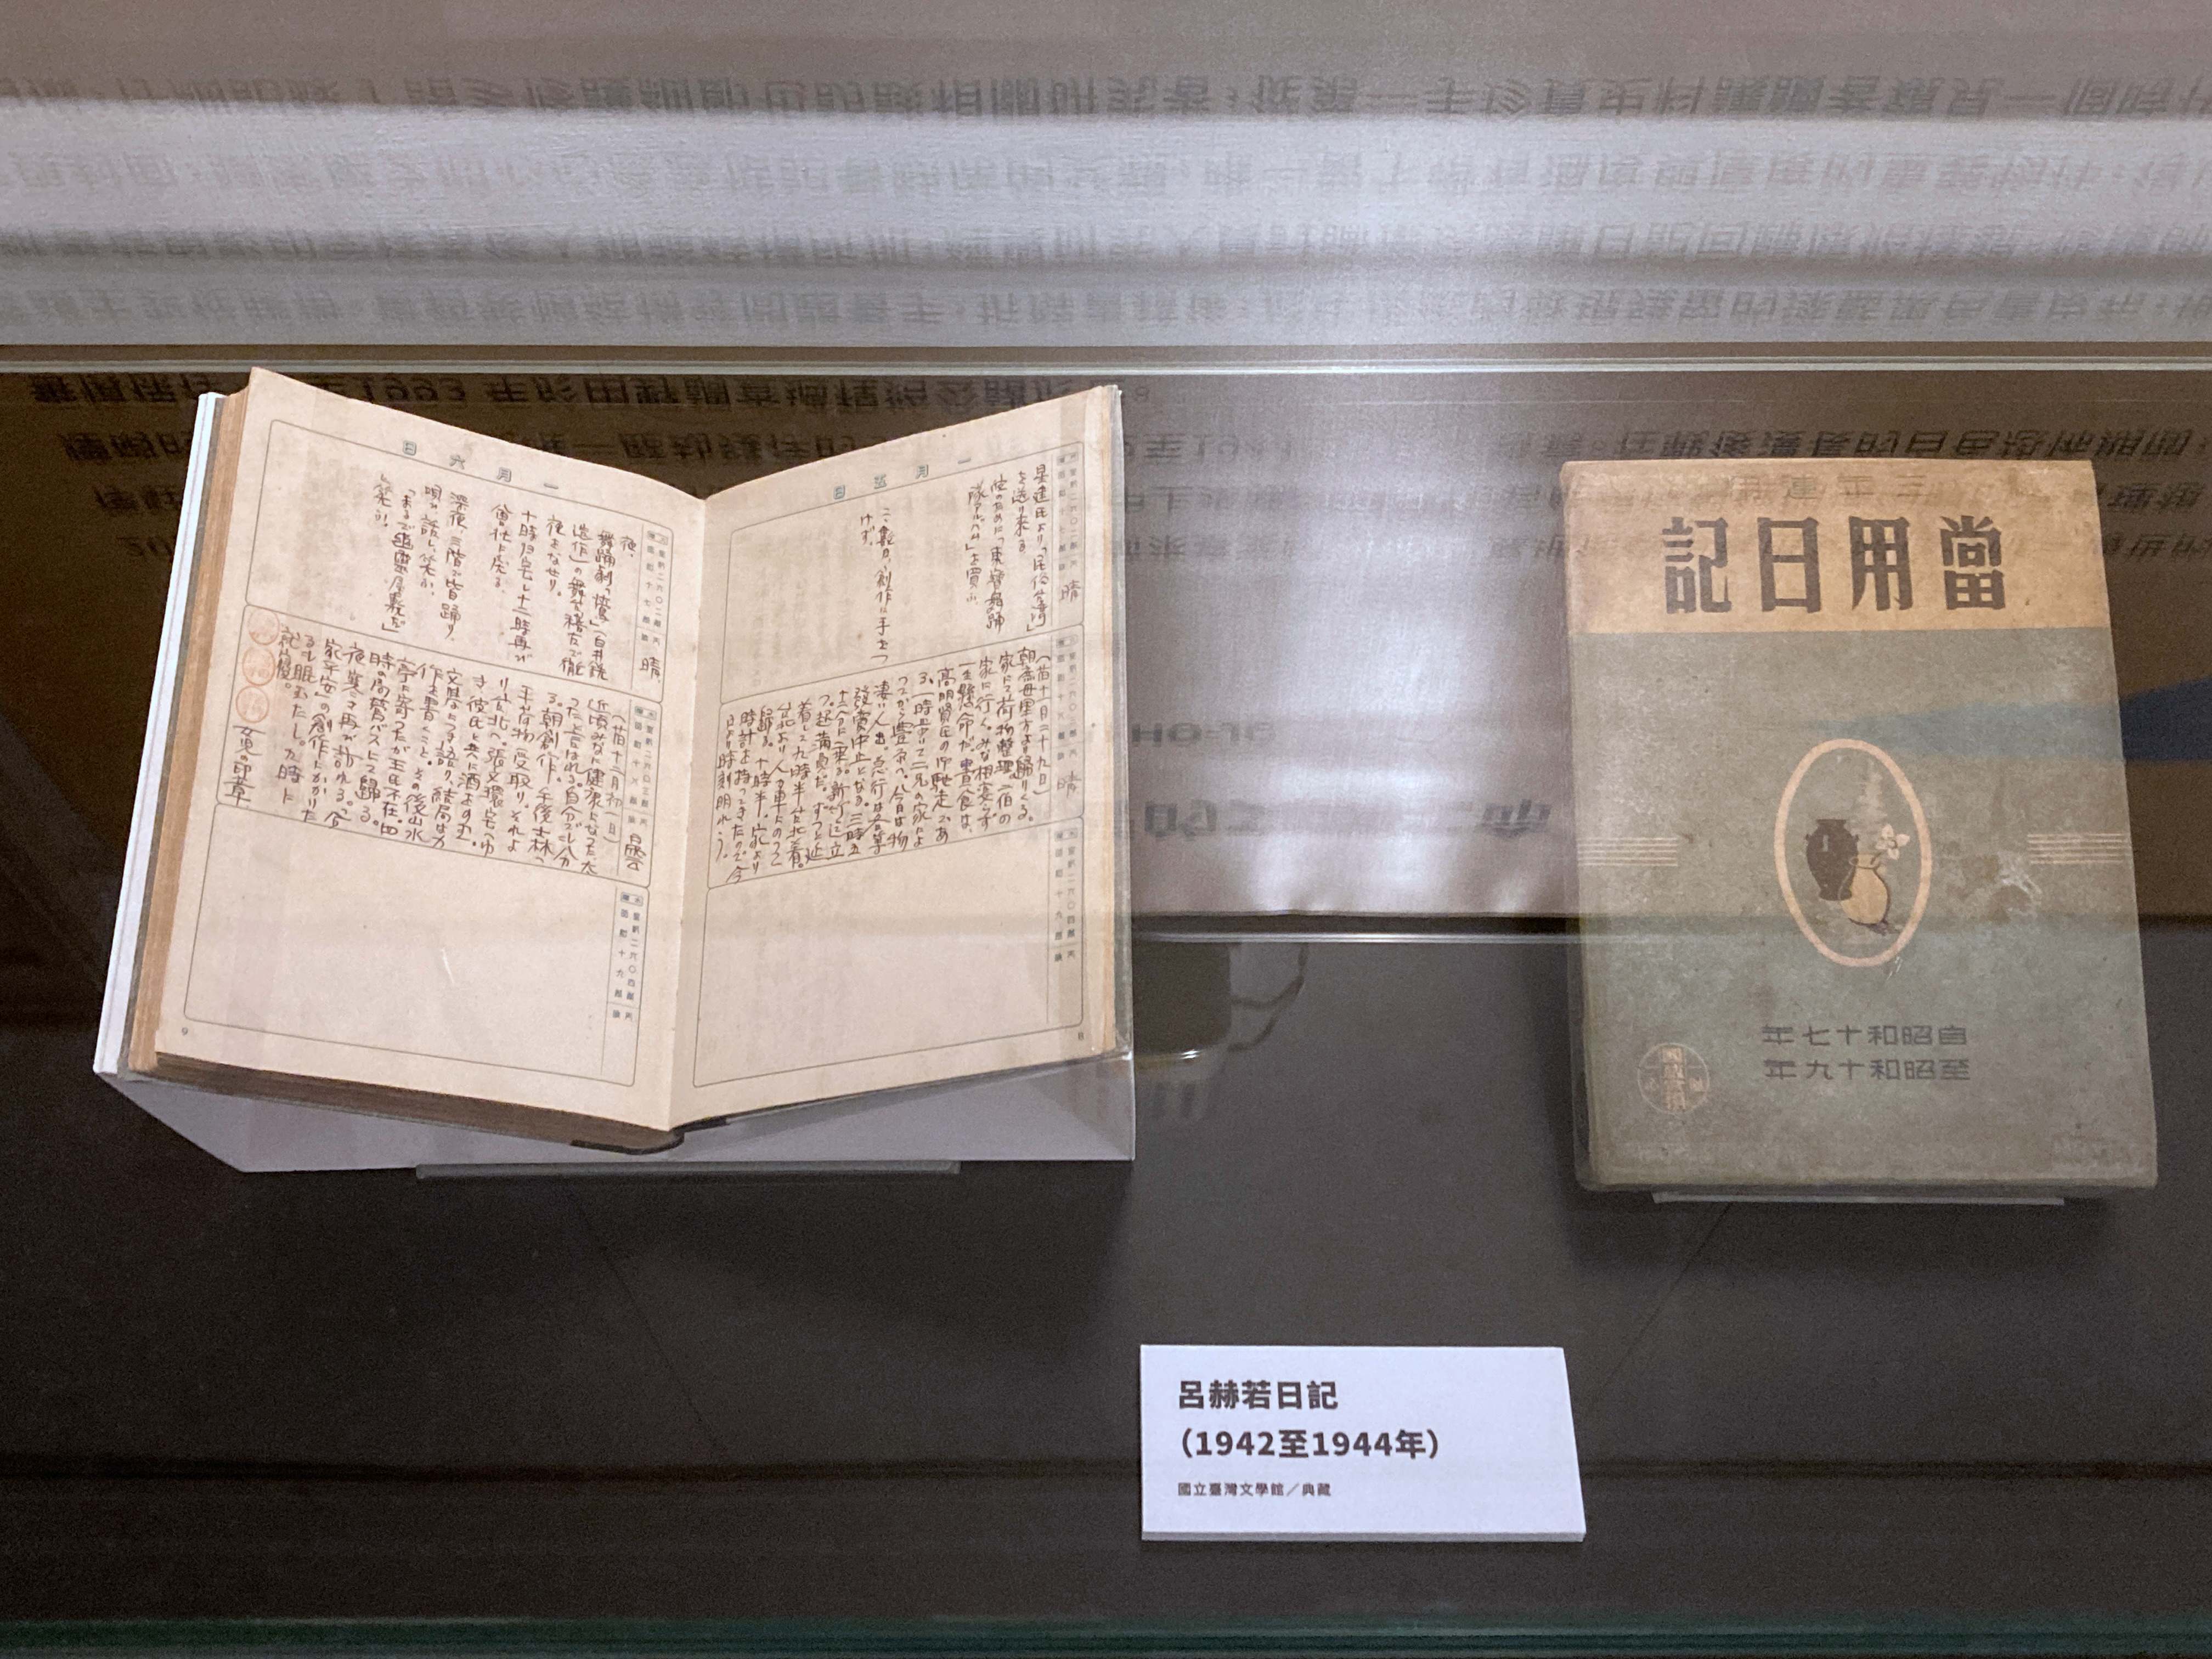 NMTL Hadirkan Restorasi Peninggalan Budaya Penting “Buku Harian Lu Ho-jo”